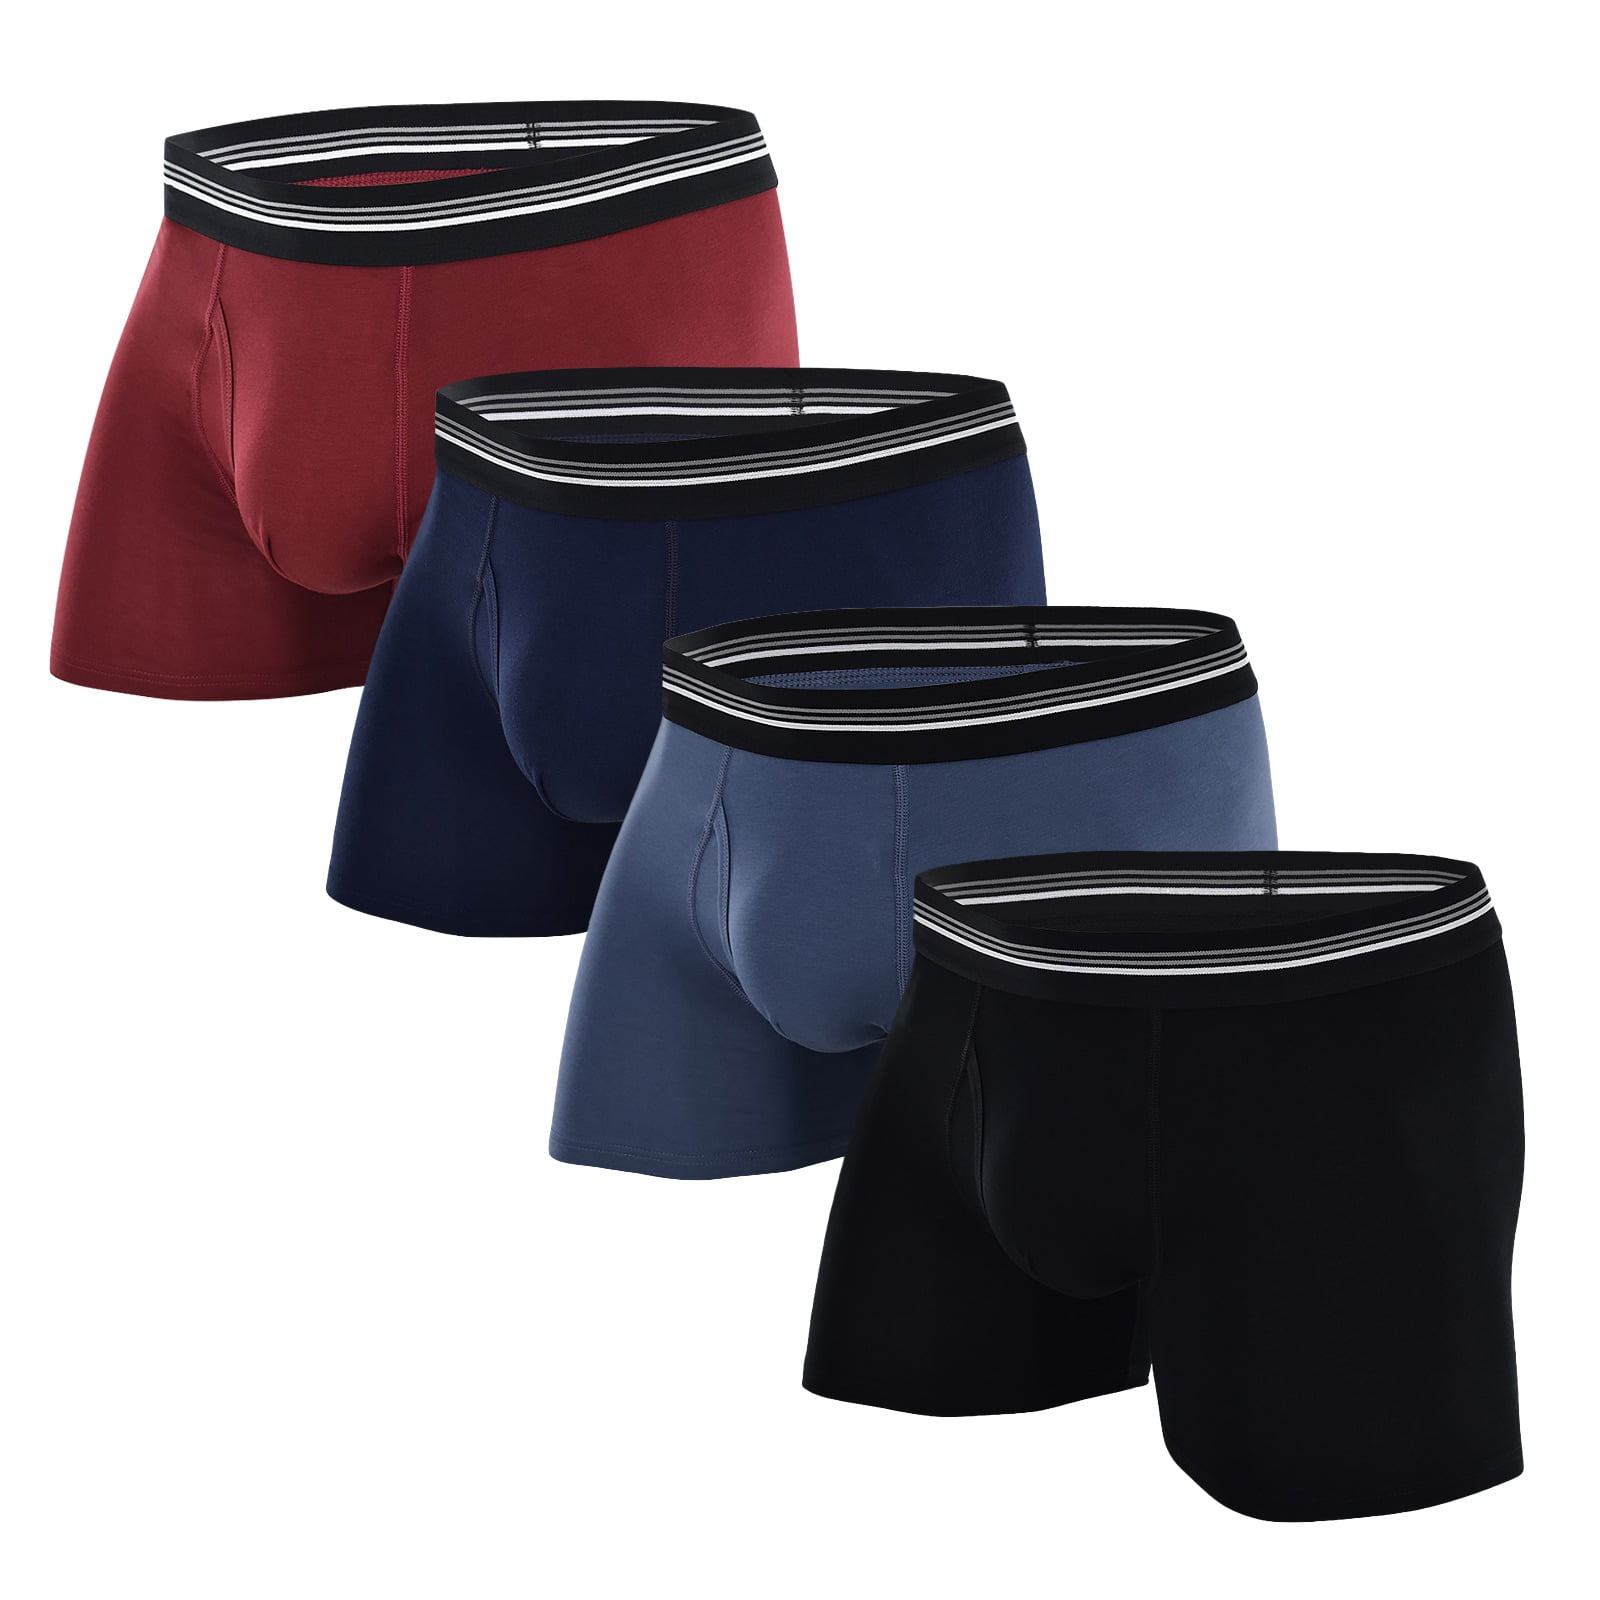 COOPLUS Men's Underwear Briefs Short Boxer Cotton Stretch Soft ...